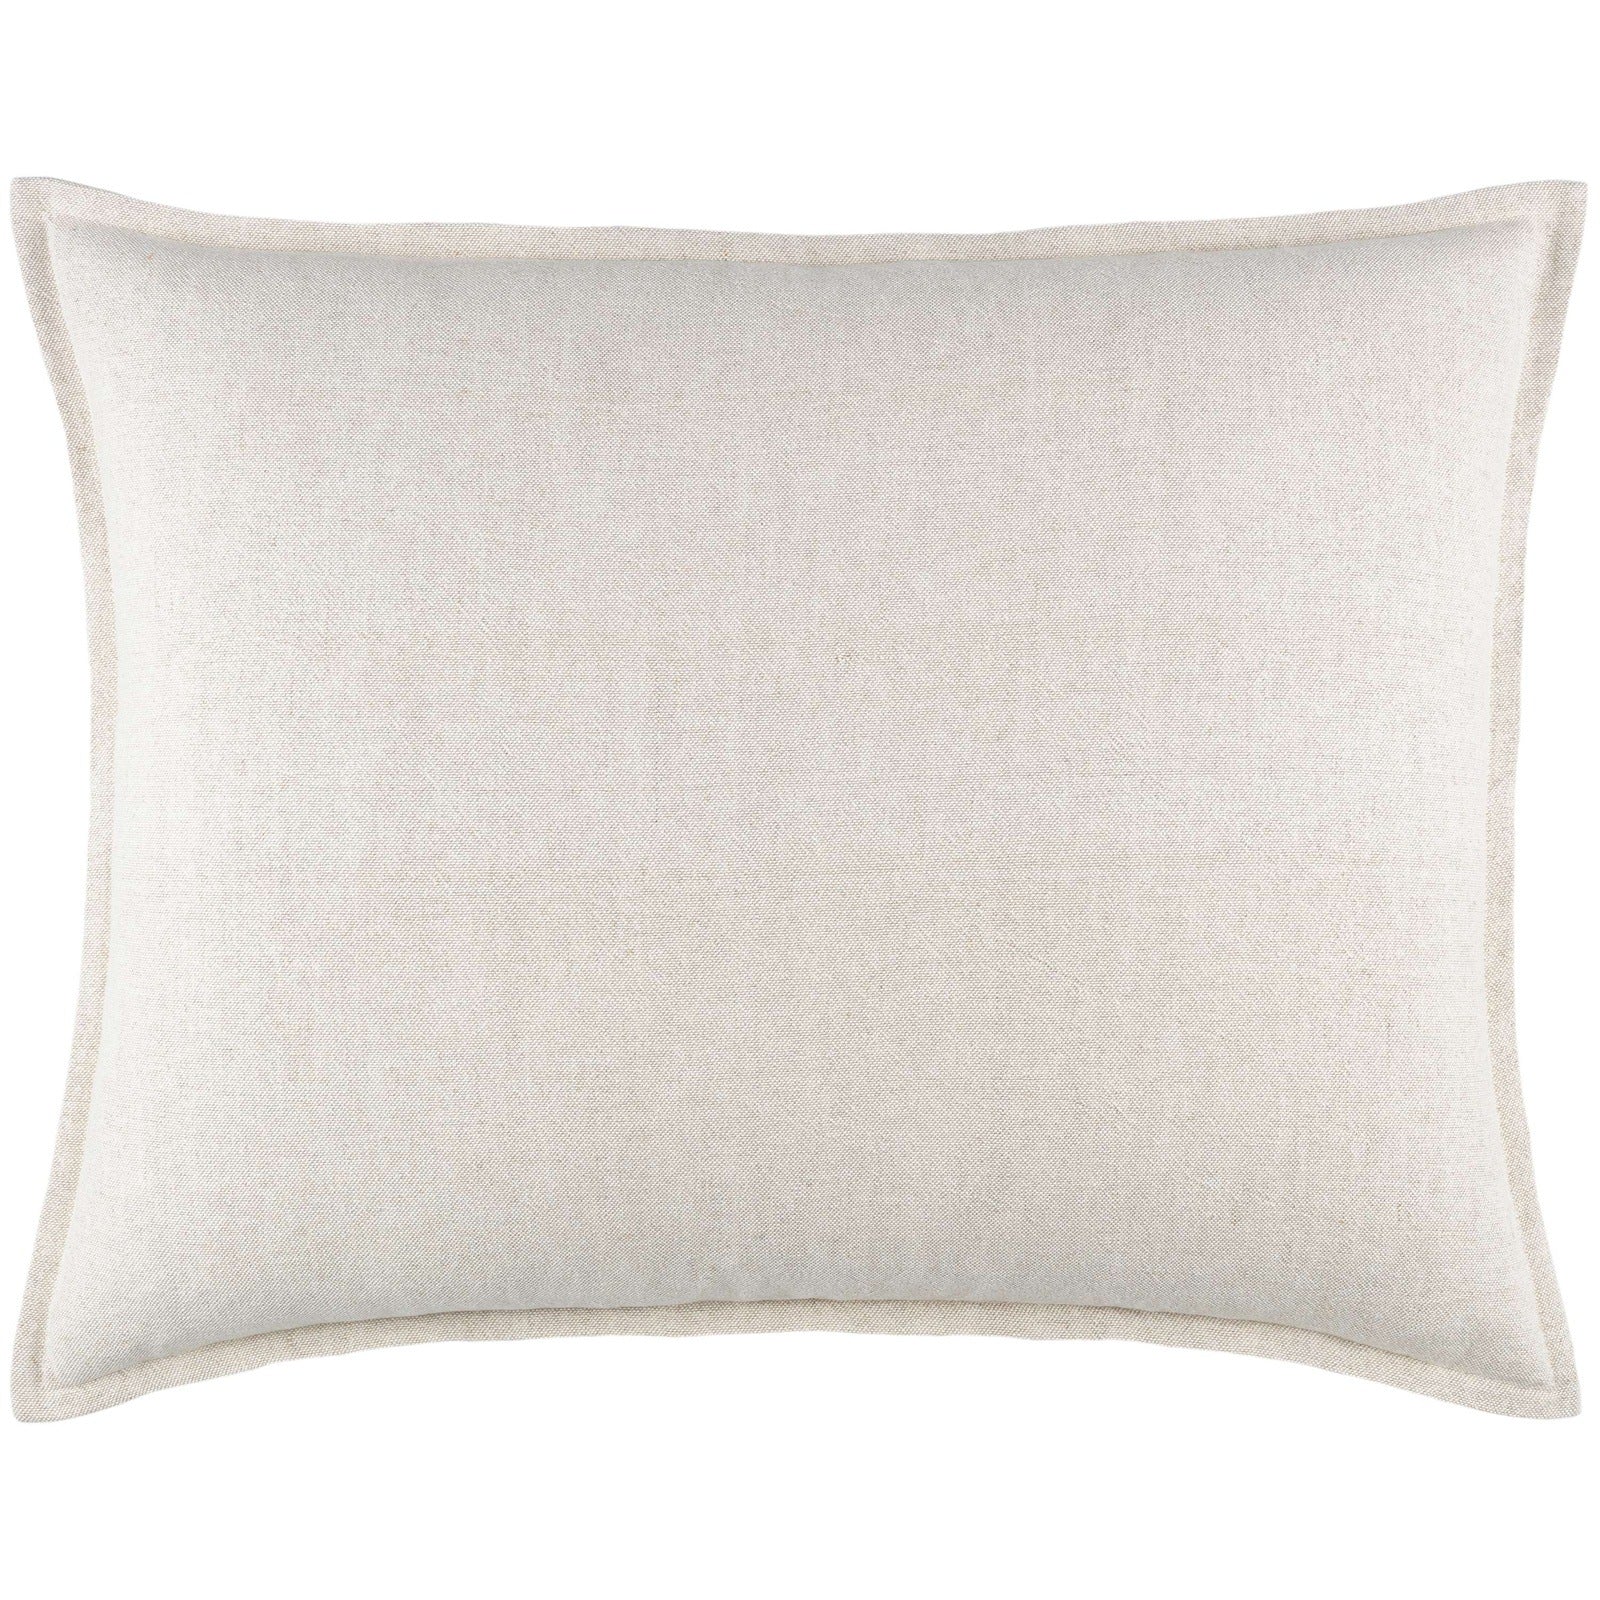 Pine Cone Hill Wilton Natural Decorative Pillow